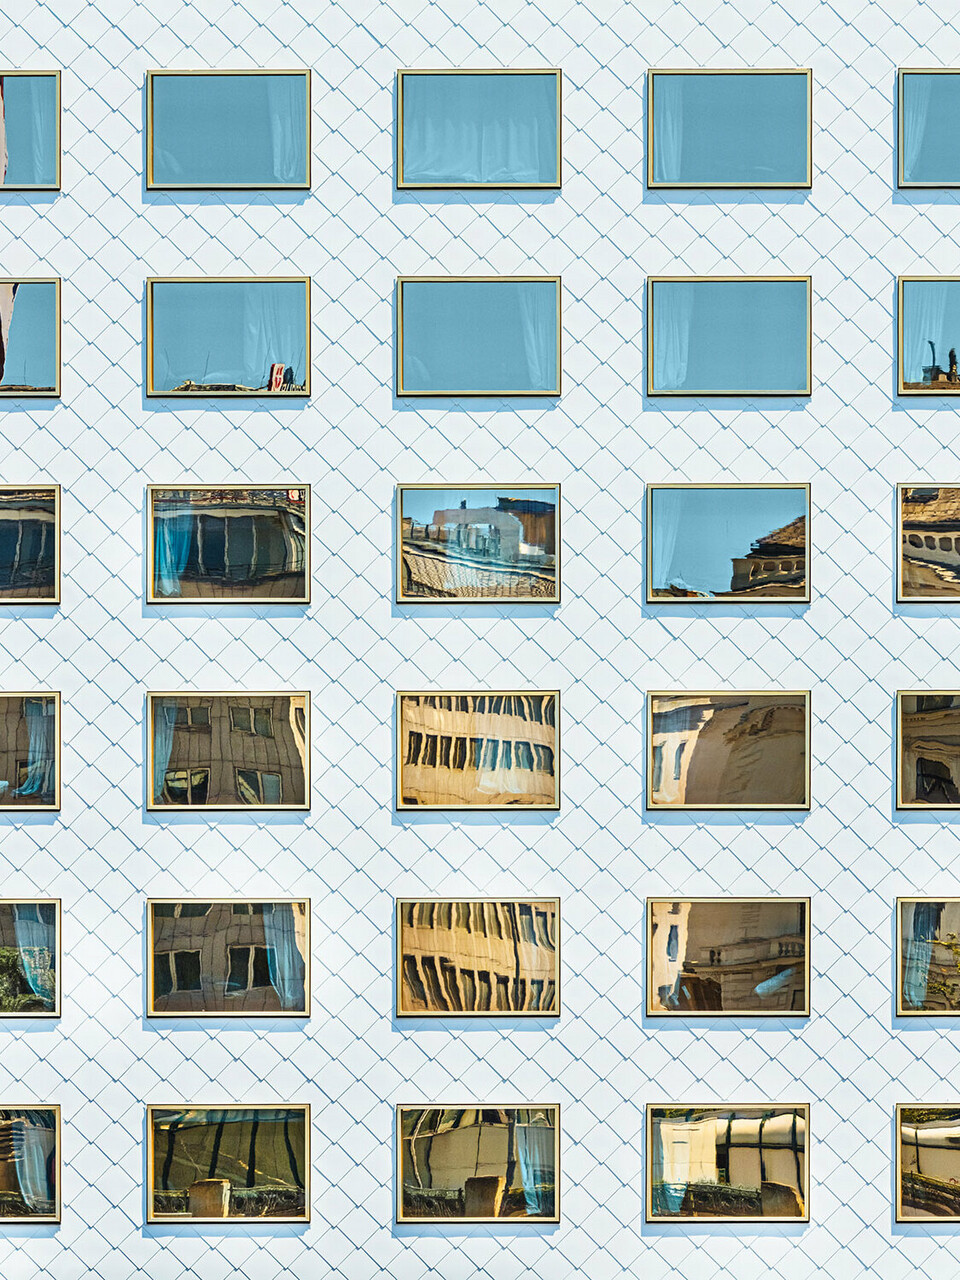 Fasáda hotelu THE ROCK Radisson RED Vienna, navržená ateliérem INNOCAD, z normální perspektiv. Můžete vidět řadu čistě bílých nástěnných kosočtvercových šablon a zrcadlově zasklených oken, které obklopují okolí.